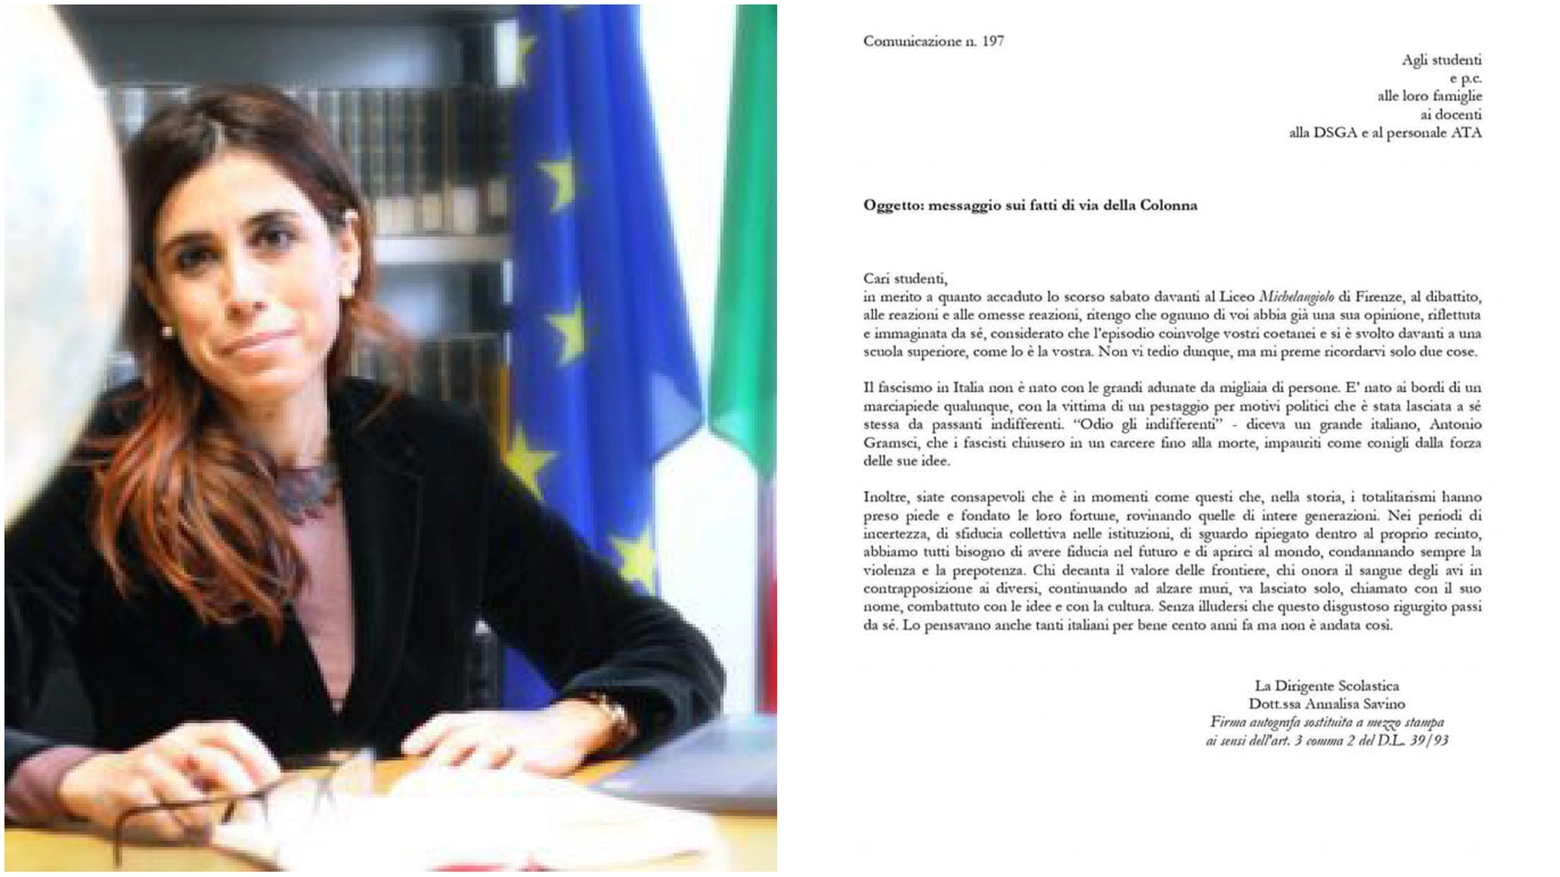 Insulti, offese, intimidazioni. La dirigente scolastica fiorentina ha denunciato alla Digos alcune lettere ricevute. Solidarietà della candidata sindaco per il centrosinistra Sara Funaro